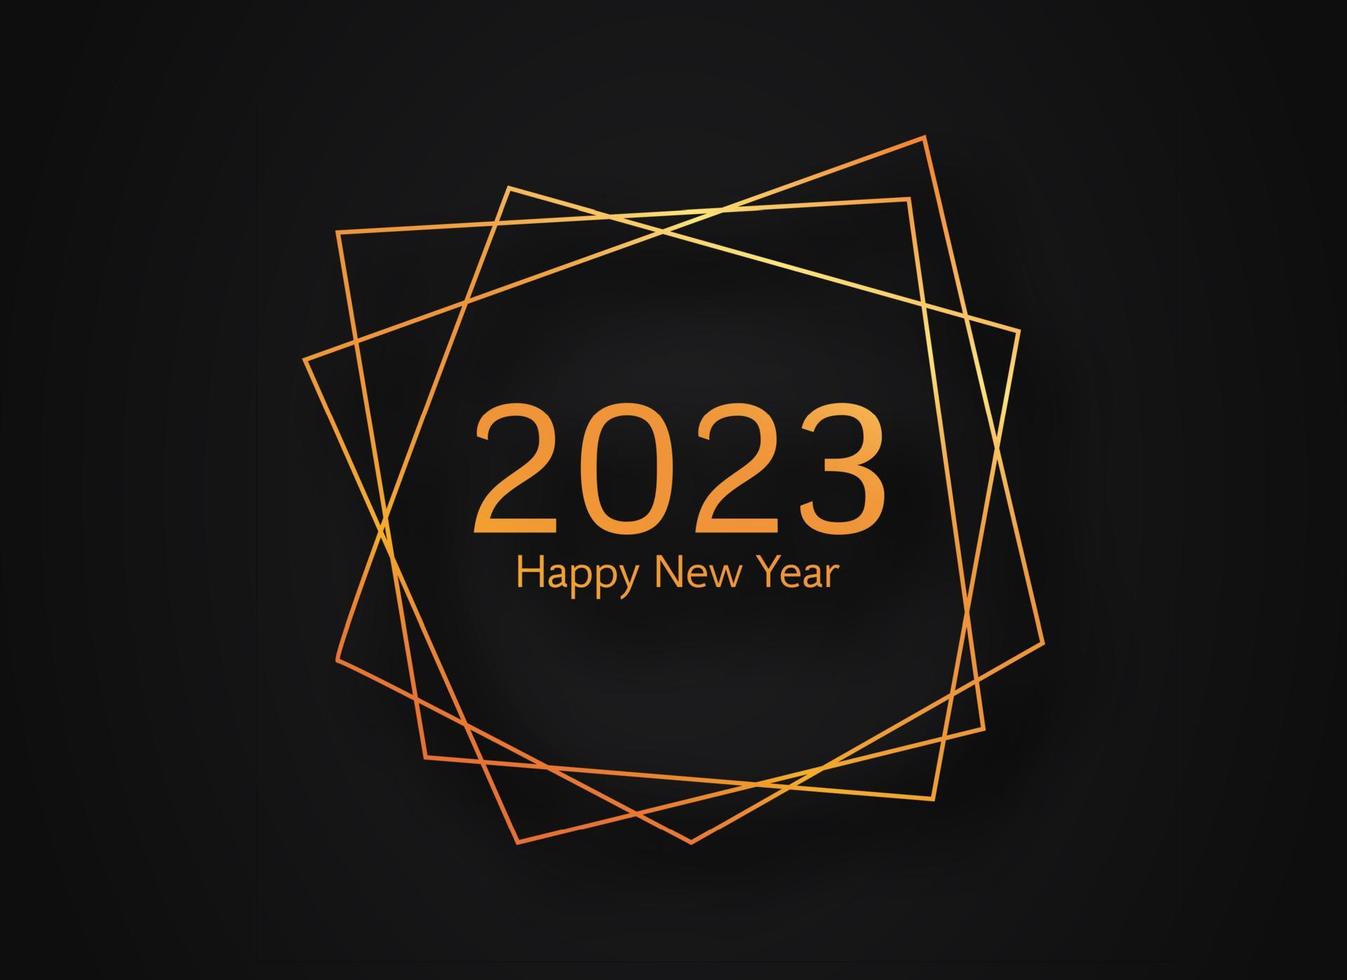 2023 bonne année or fond polygonal géométrique vecteur